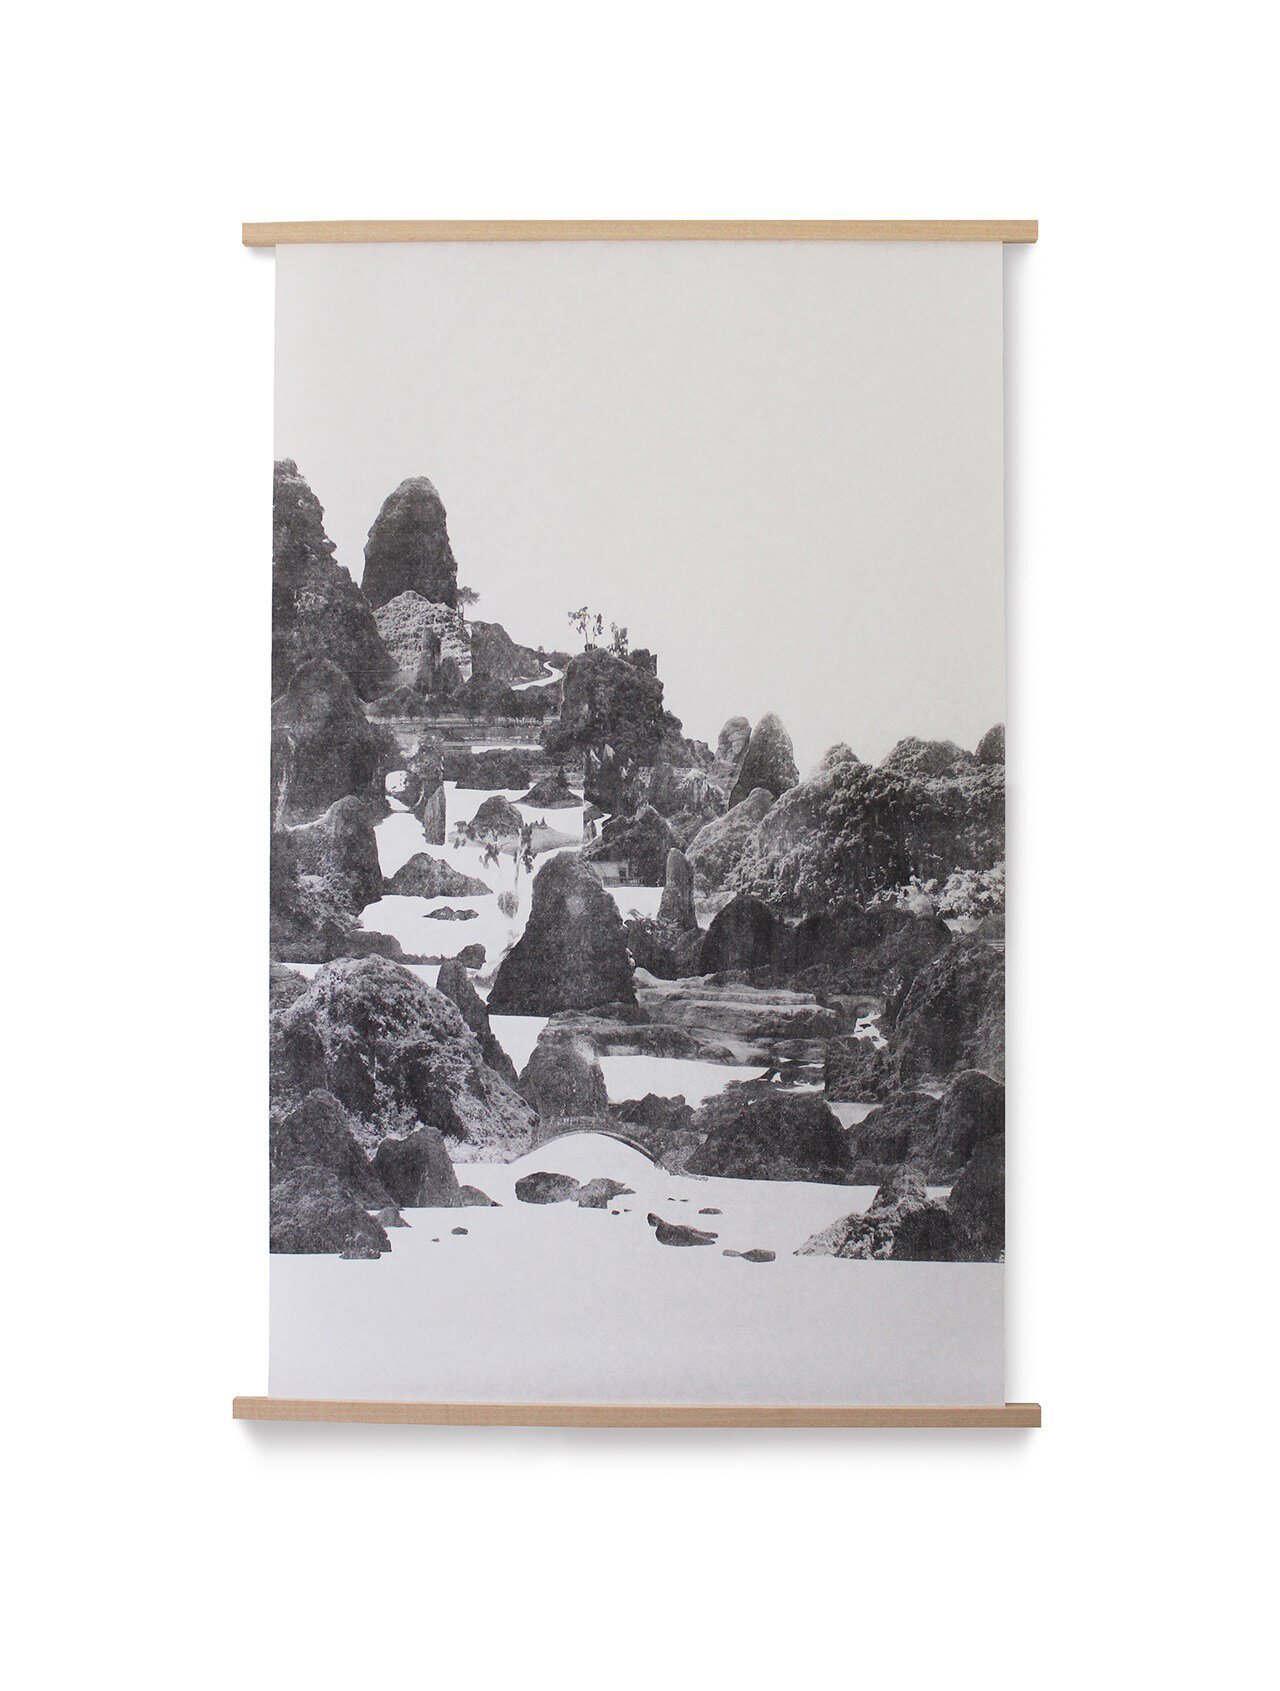 Sherrie-Leigh-Jones-Artist-Printmaker-Brighton-Calm-white-river-Contemporary-Japanese-Landscape-Original-Art-Print.jpg